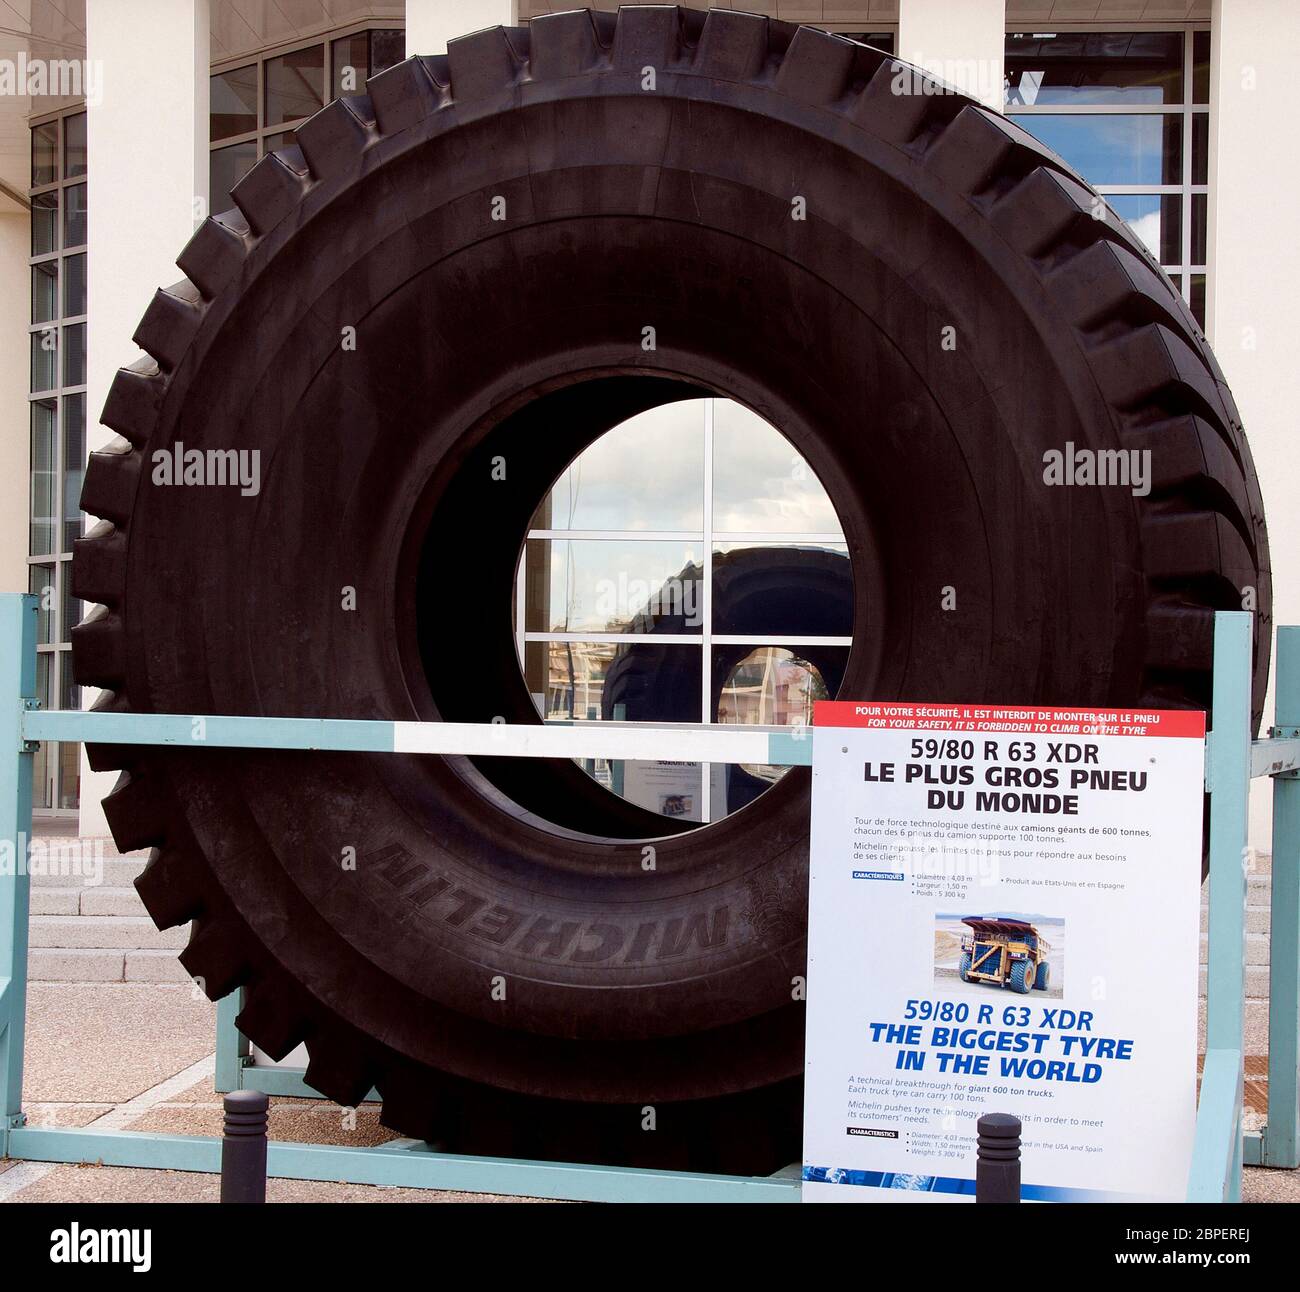 Plus gros pneu du monde Banque de photographies et d'images à haute  résolution - Alamy